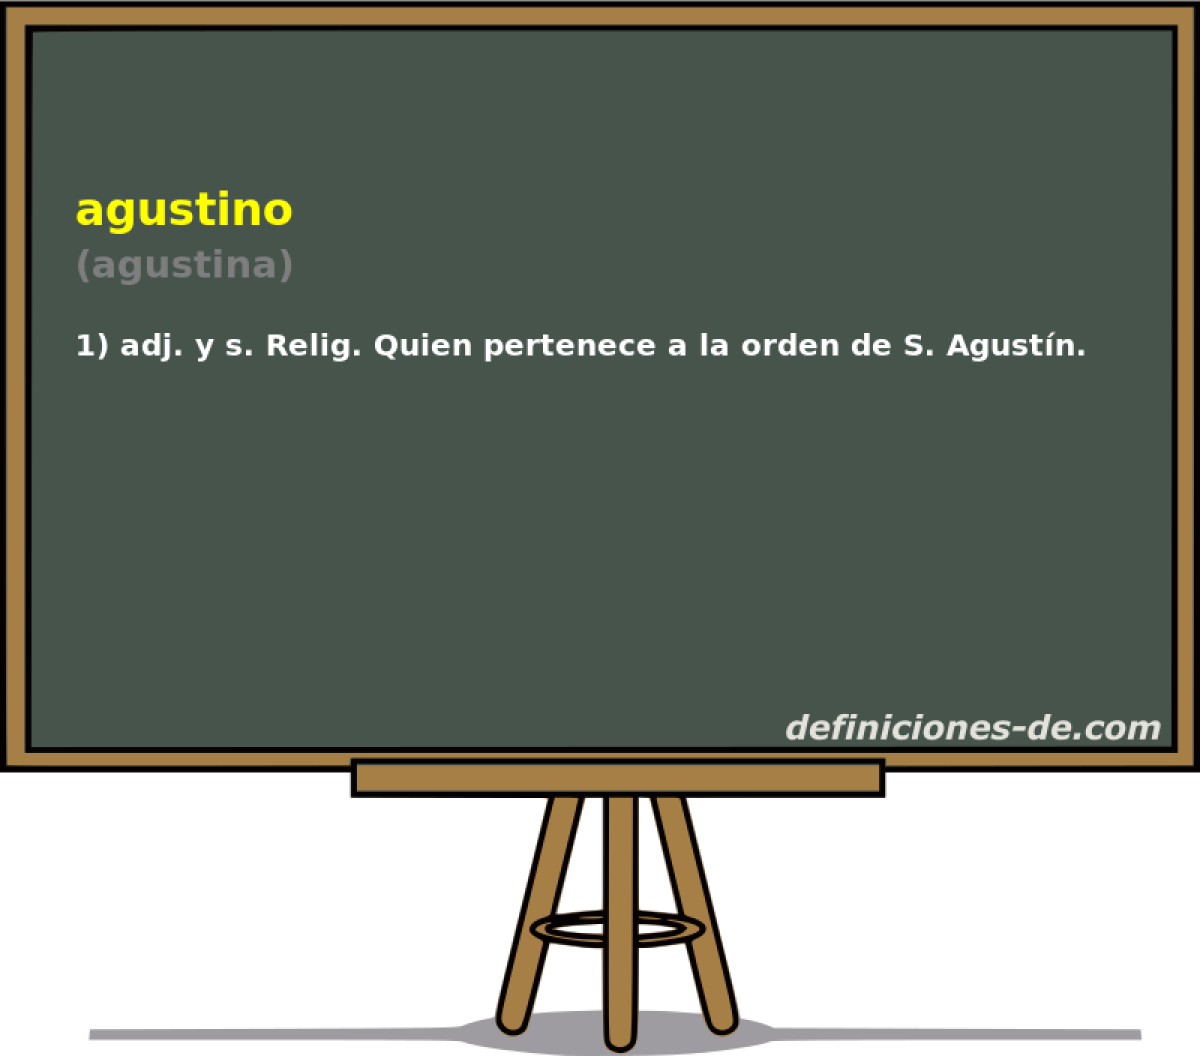 agustino (agustina)